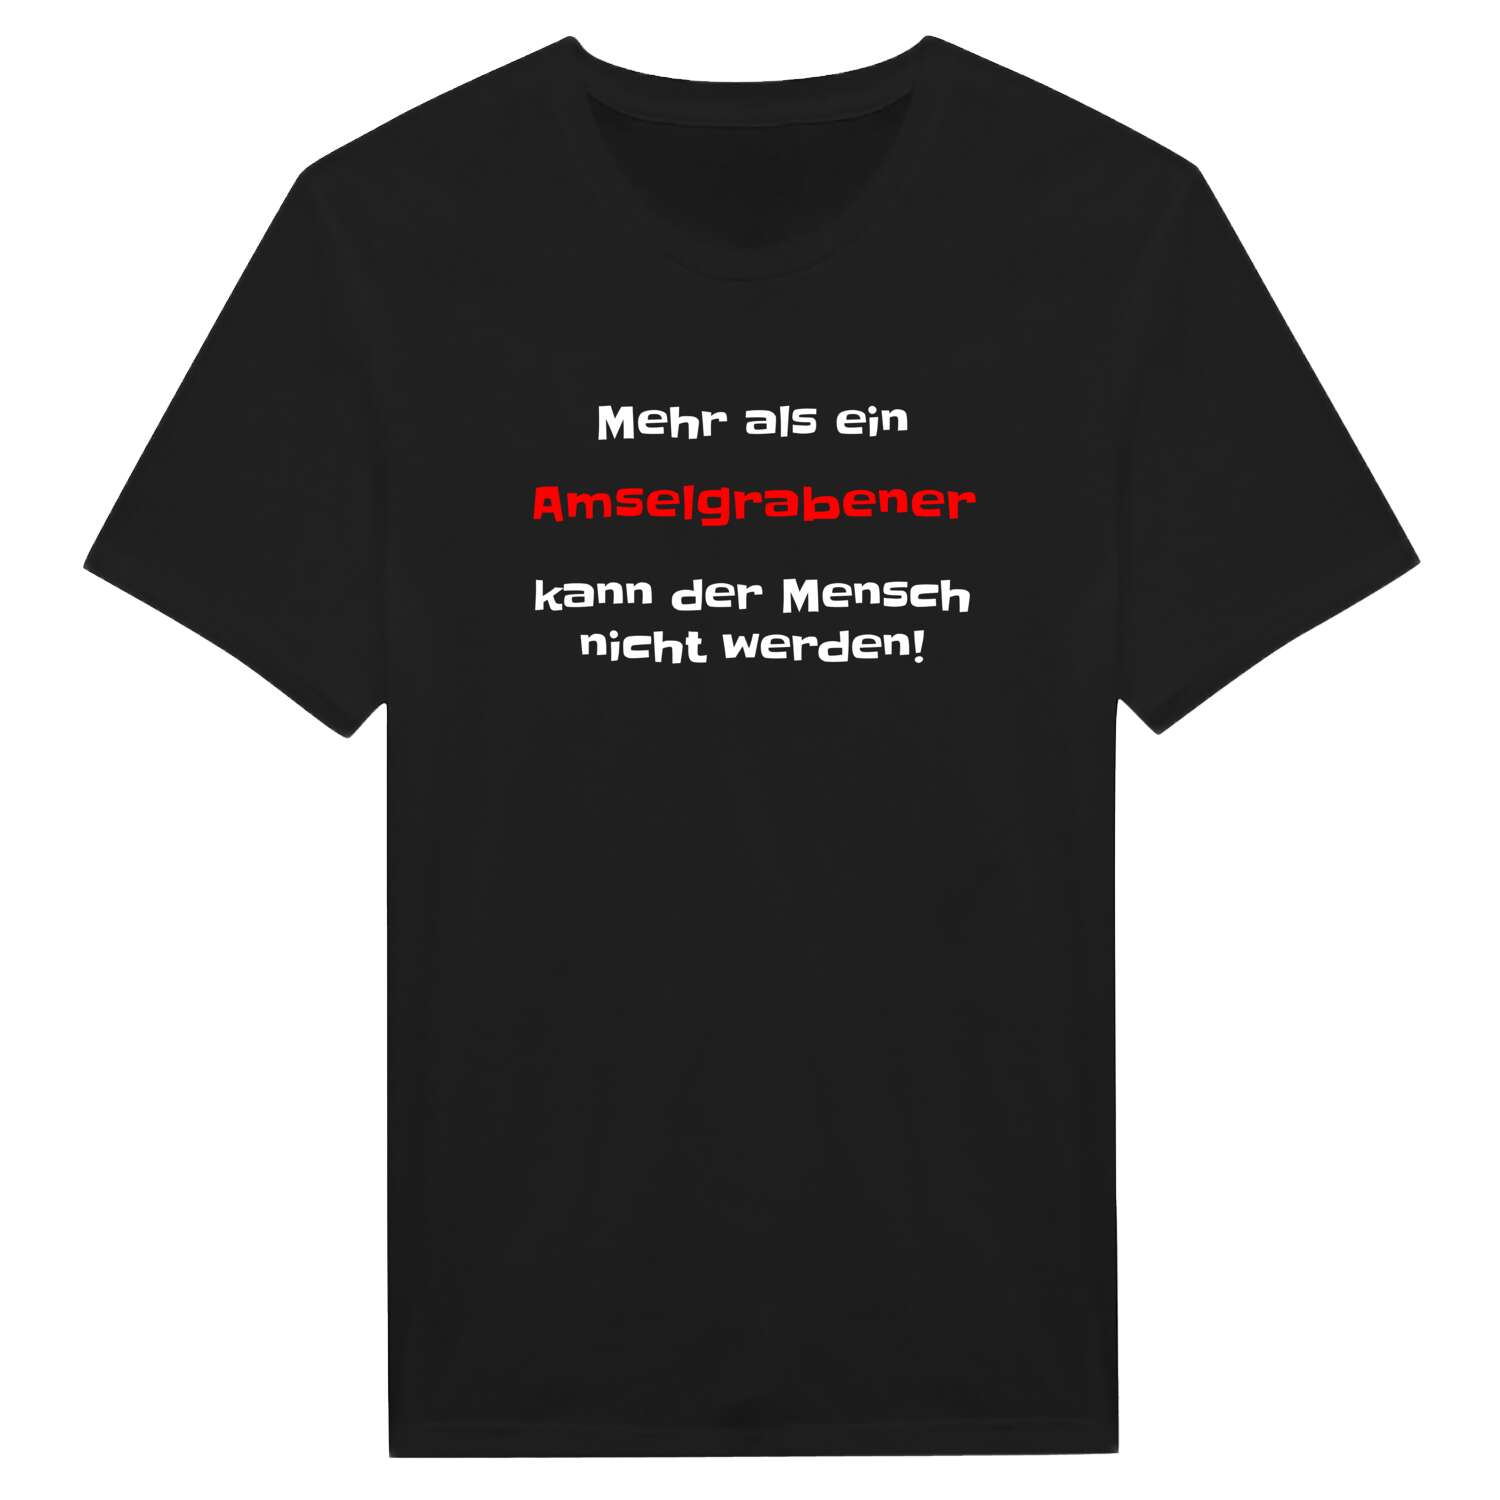 Amselgraben T-Shirt »Mehr als ein«